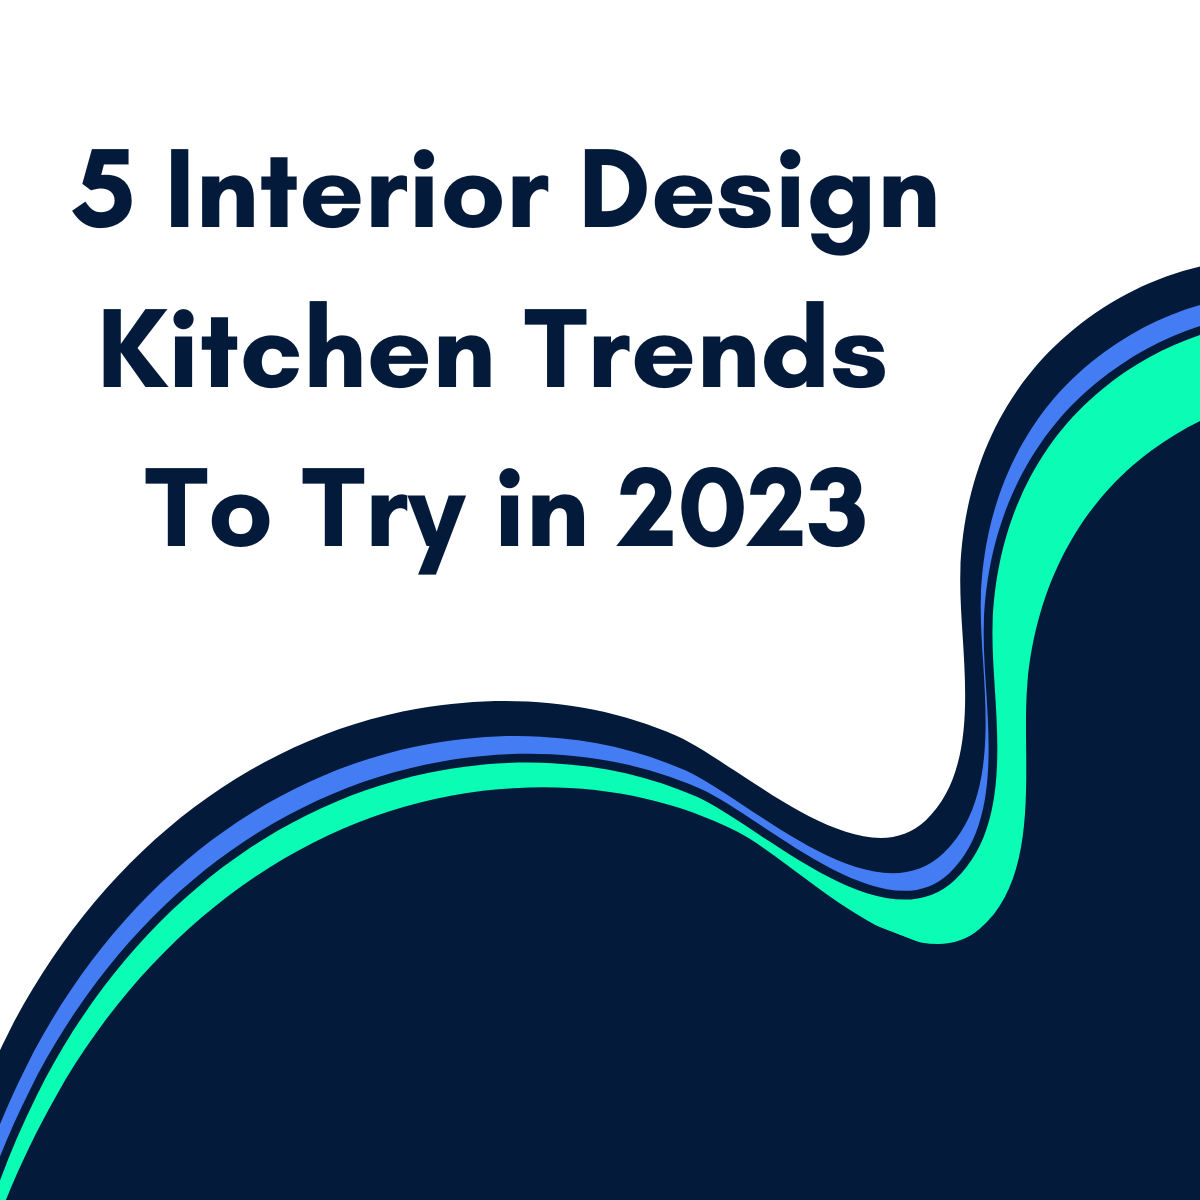 Interior Design Kitchen Trends